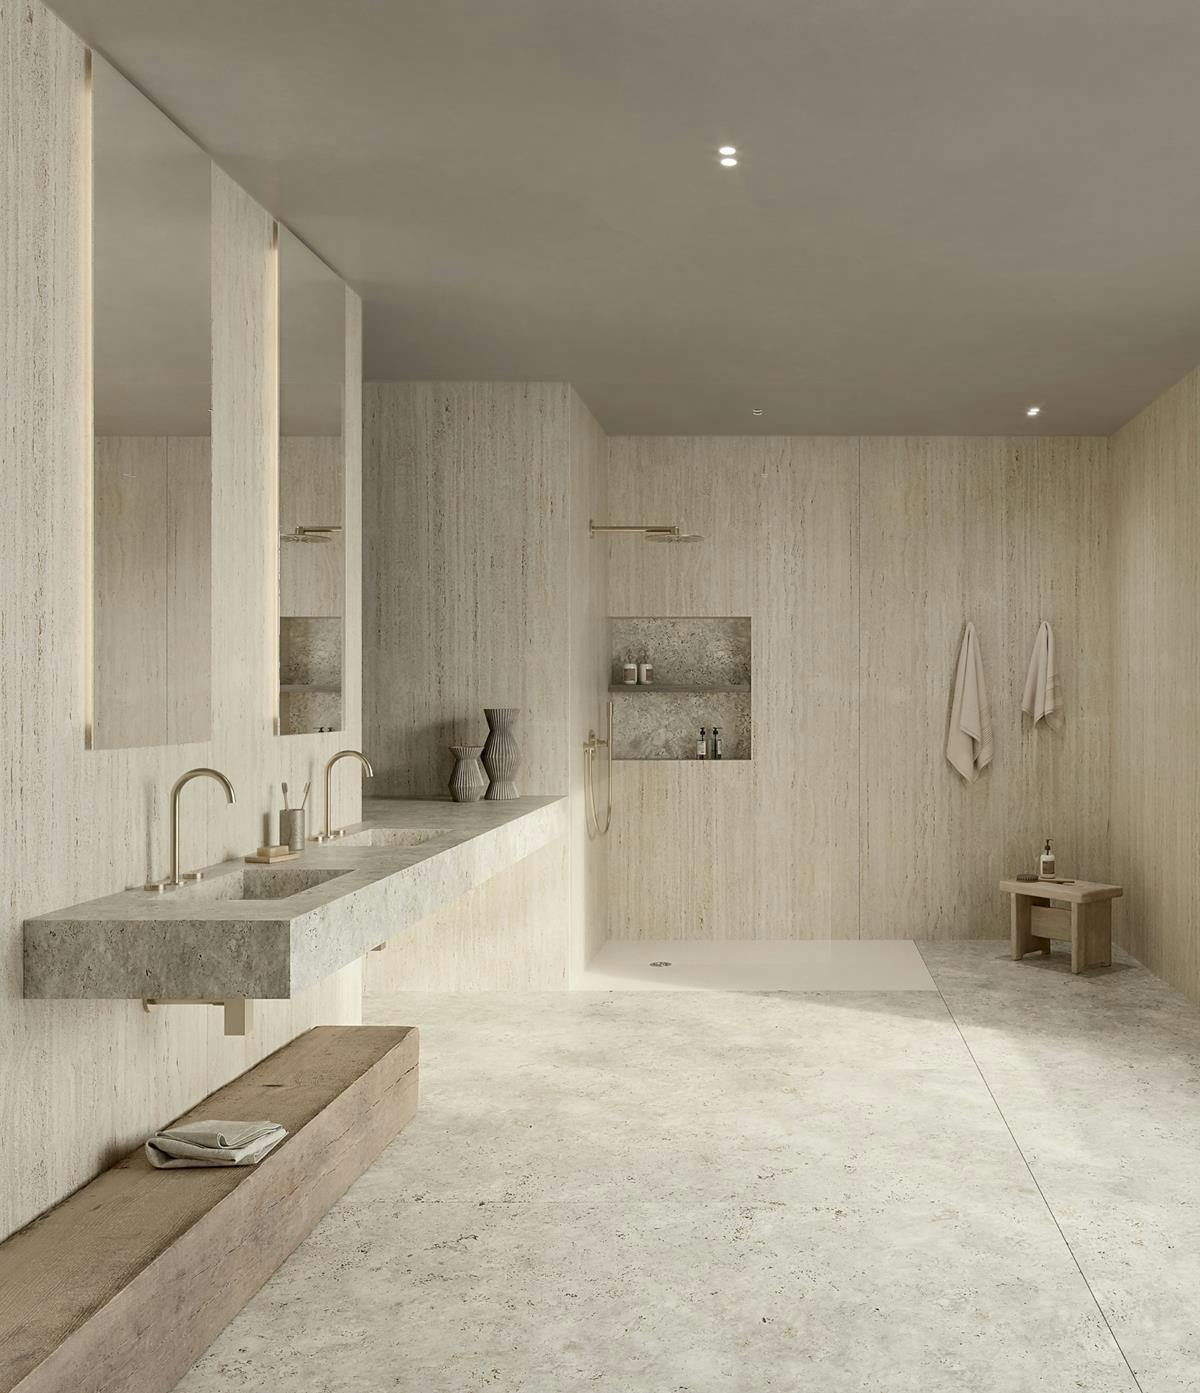 C-Bath : la salle de bain complète selon Cosentino - Cosentino